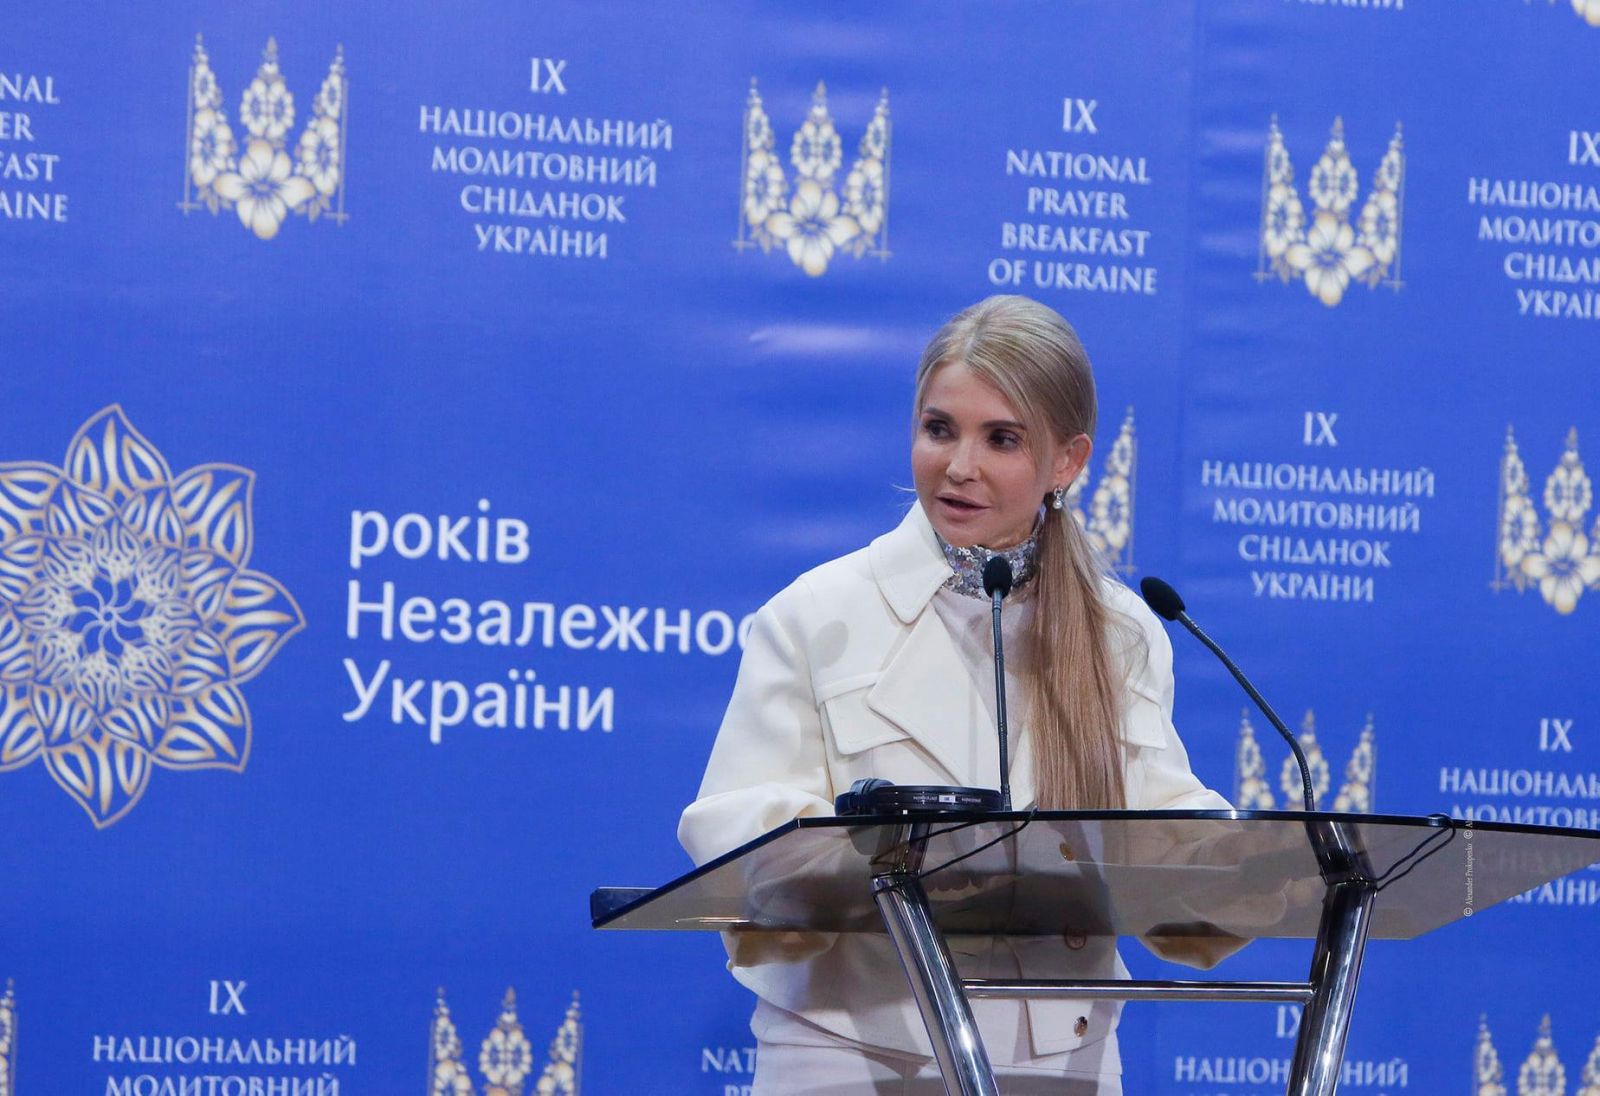 Юлія Тимошенко в новому образі. Фото: Facebook